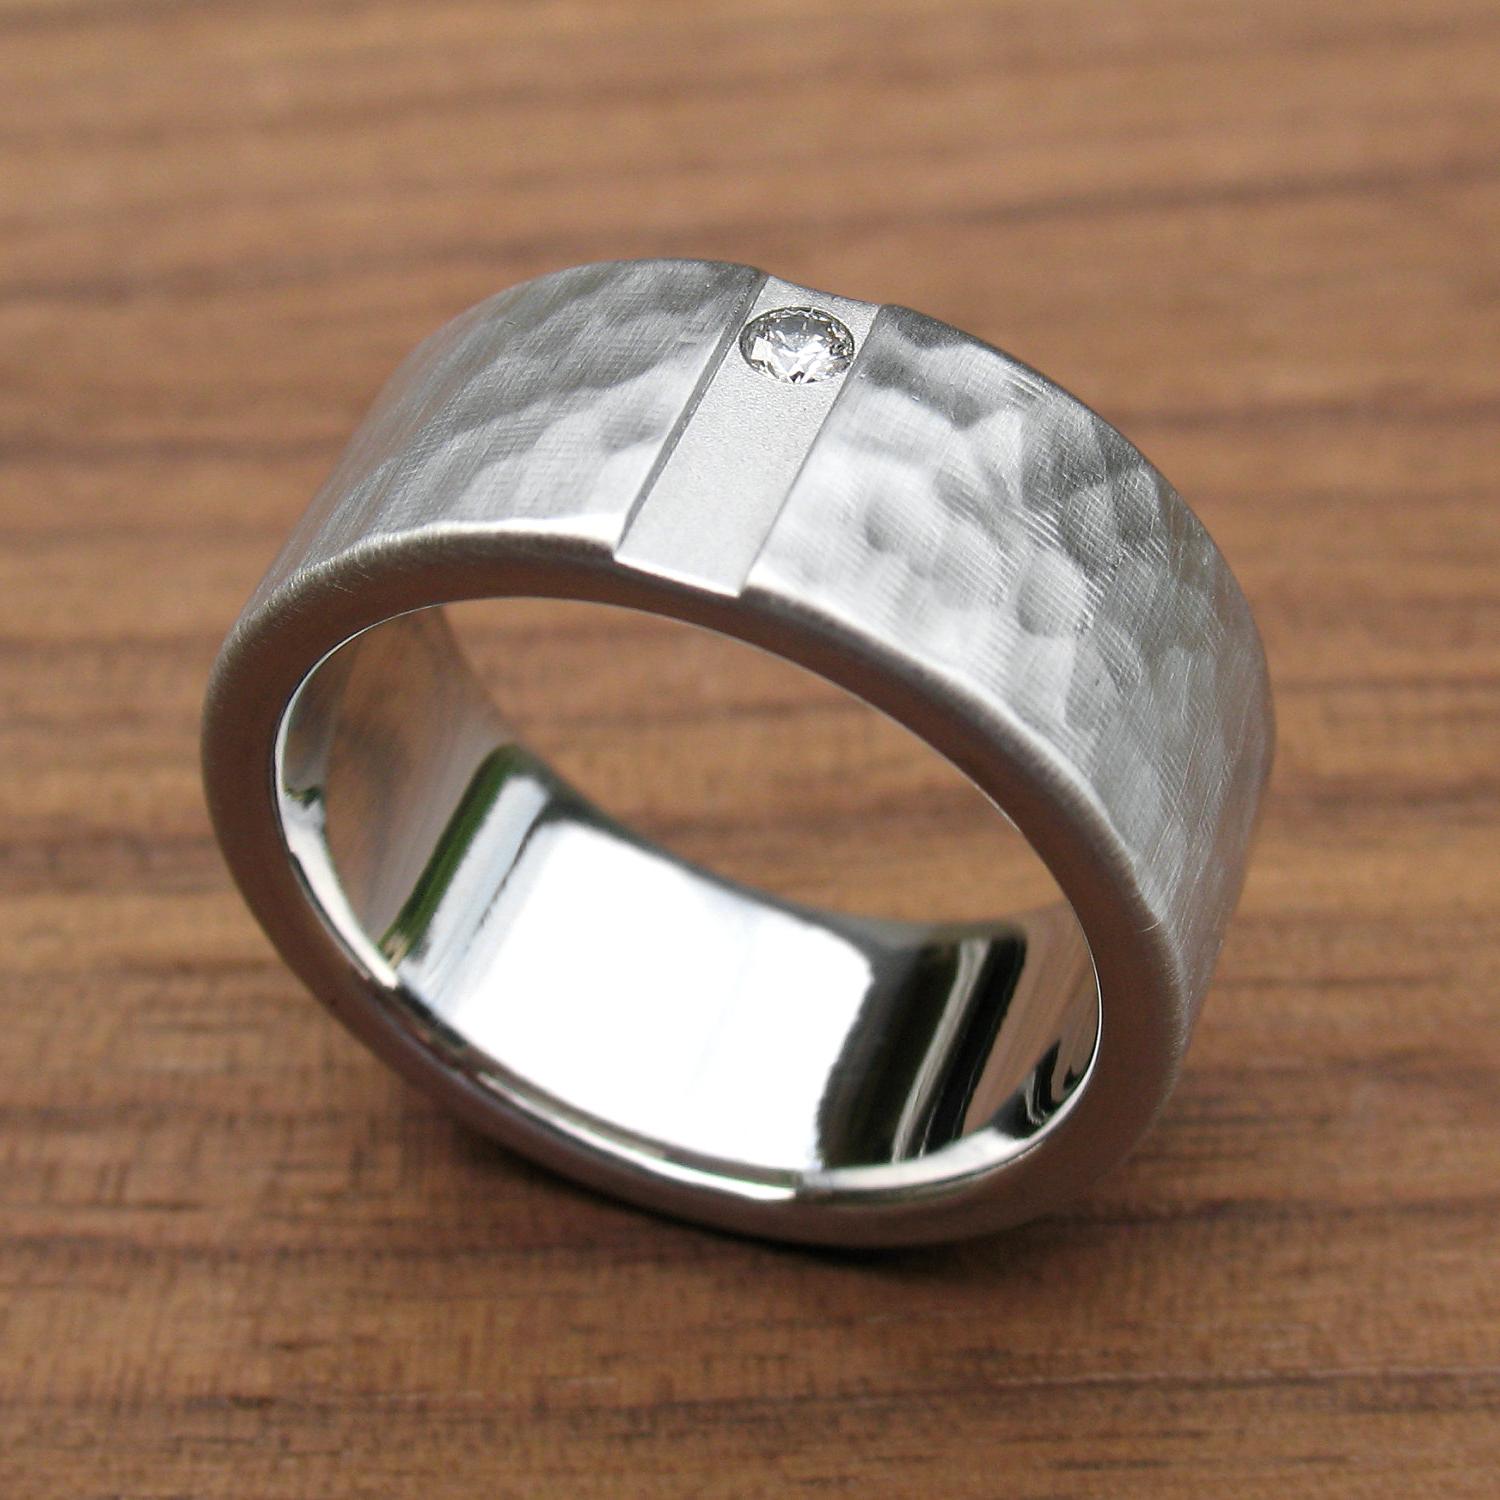 This unique titanium ring